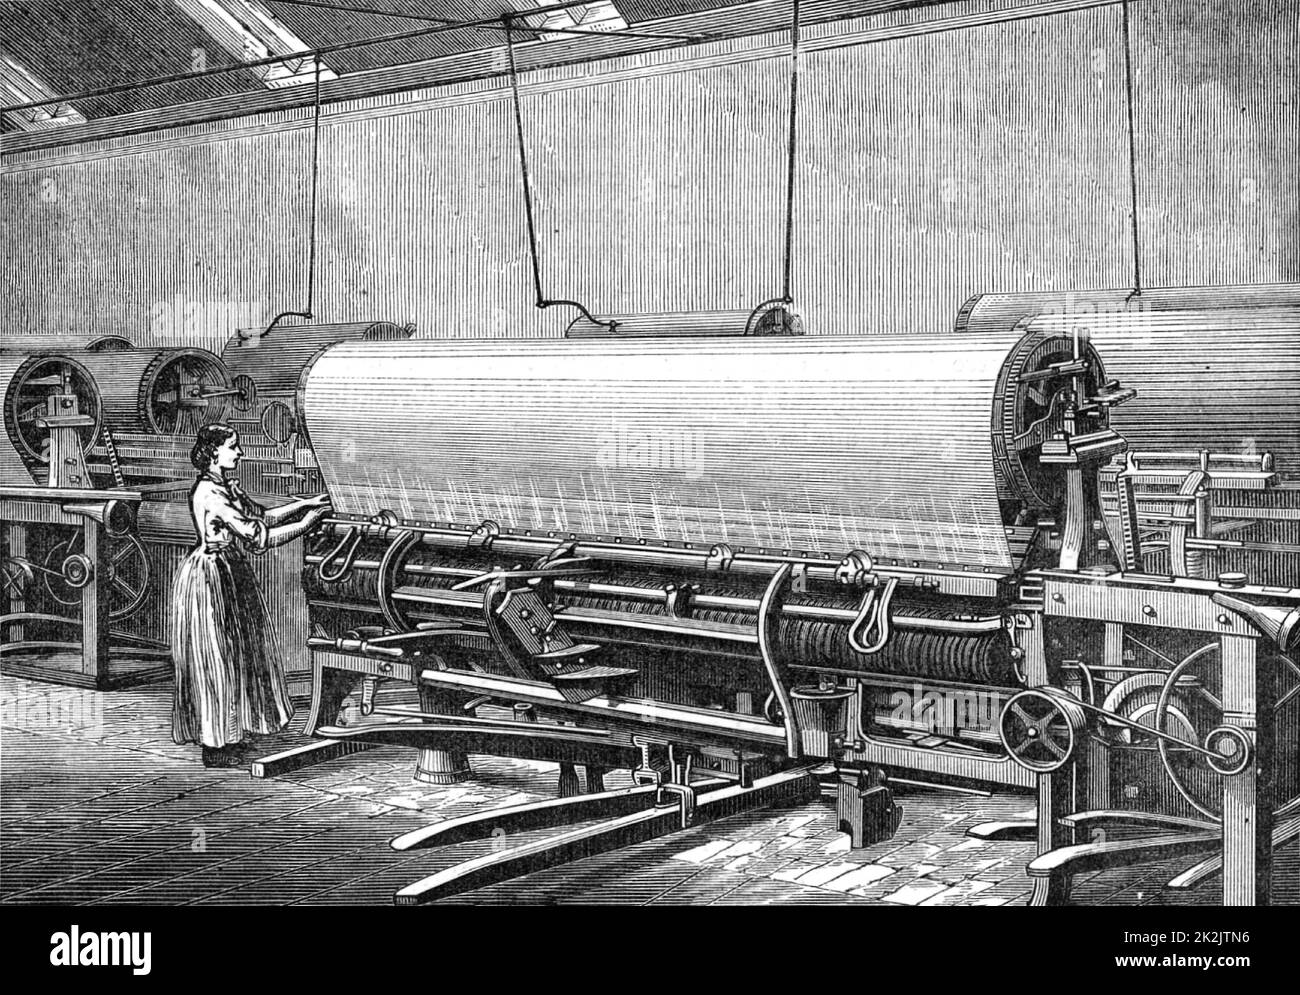 Webstuhl für die Herstellung von Hanffischernetzen. J & W Stuarts Fabrik, Musselburgh, in der Nähe von Edinburgh, Schottland. Aus „Great Industries of Great Britain“ (London, c1880). Gravur. Stockfoto